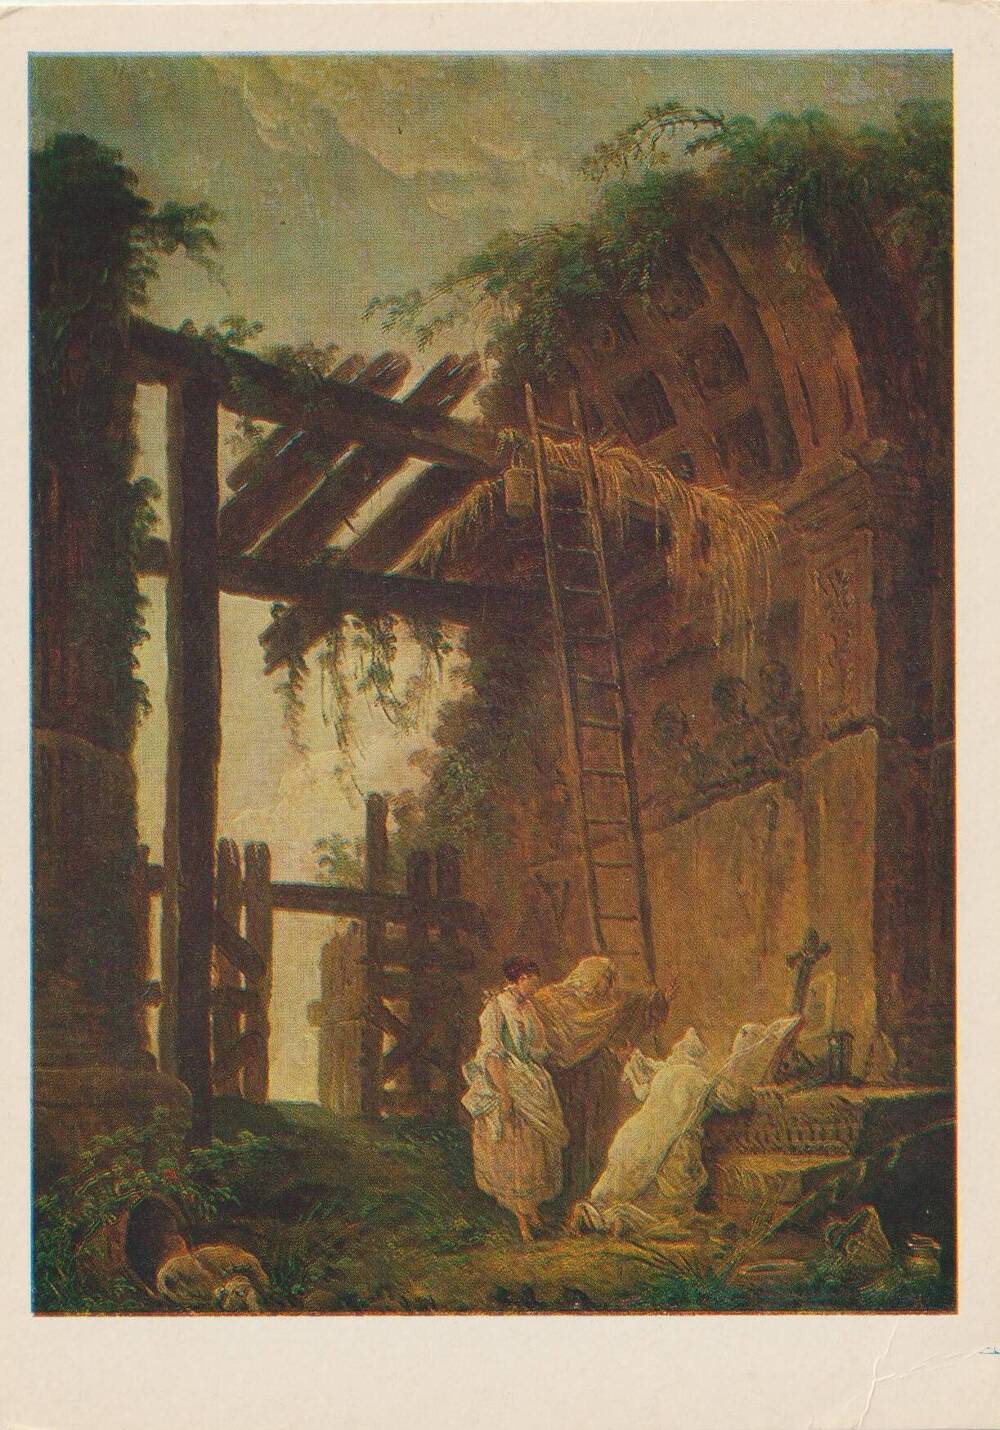 Открытка художественная. HUBERT ROBERT. 1733-1808. A Visit to a Hermit/ Гюбер Робер. 1733-1808. У отшельника.